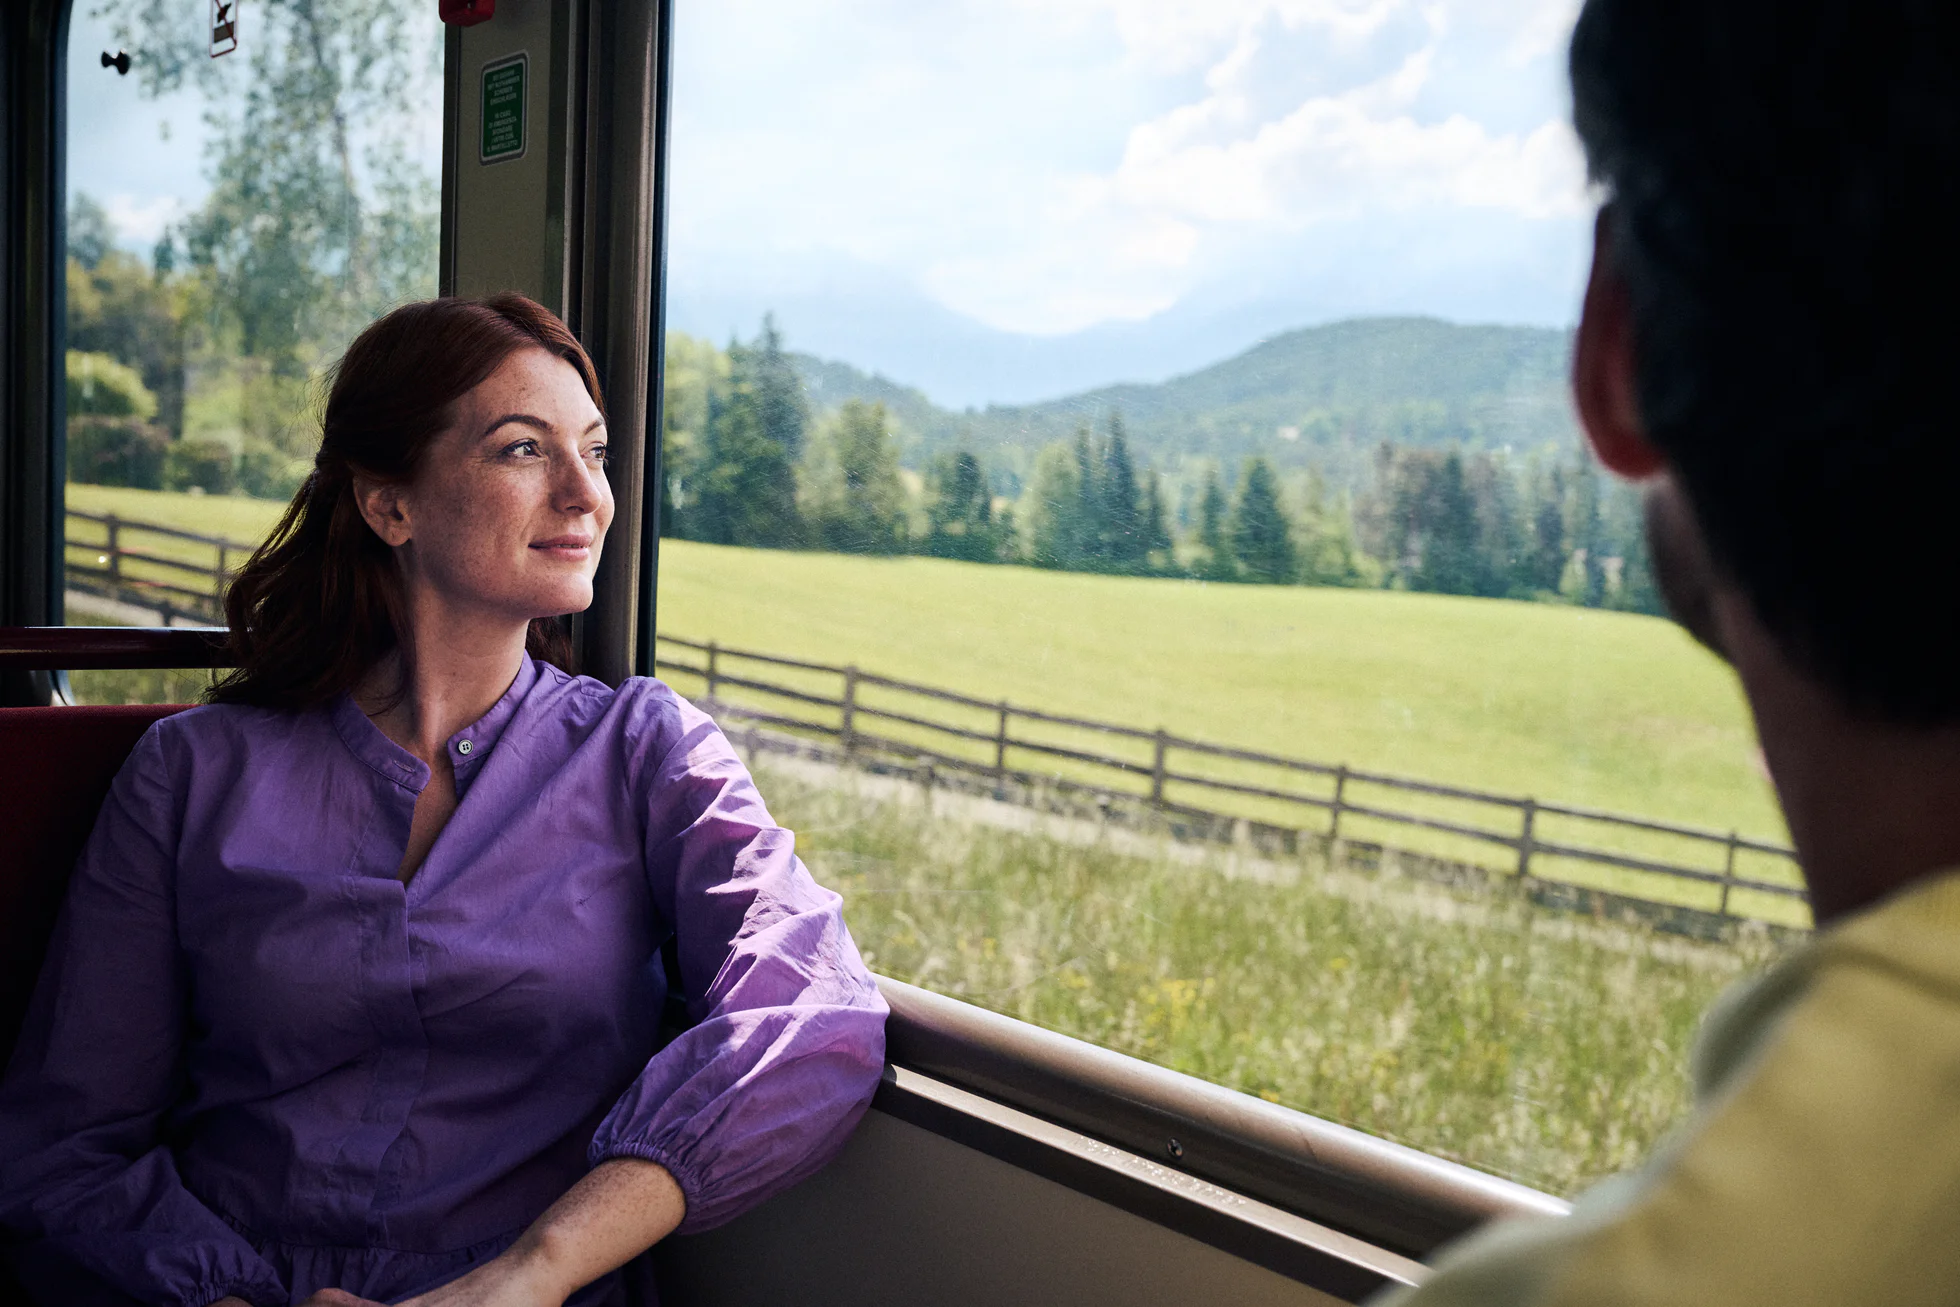 Una giovane donna siede rilassata nello scompartimento di un treno e guarda i prati fuori dal finestrino